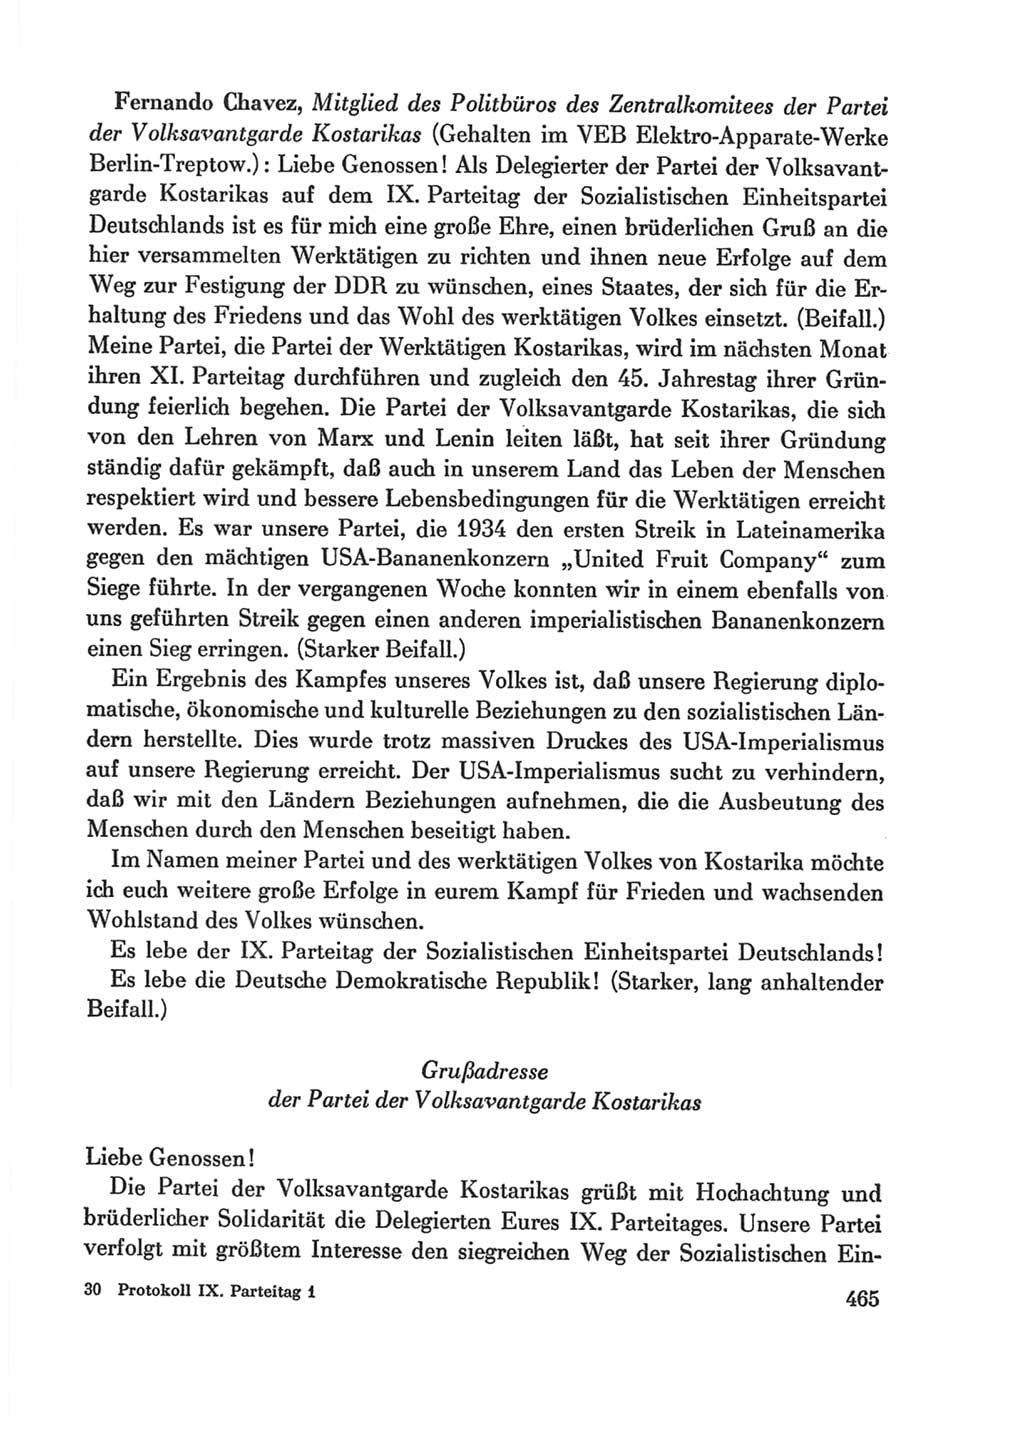 Protokoll der Verhandlungen des Ⅸ. Parteitages der Sozialistischen Einheitspartei Deutschlands (SED) [Deutsche Demokratische Republik (DDR)] 1976, Band 1, Seite 465 (Prot. Verh. Ⅸ. PT SED DDR 1976, Bd. 1, S. 465)